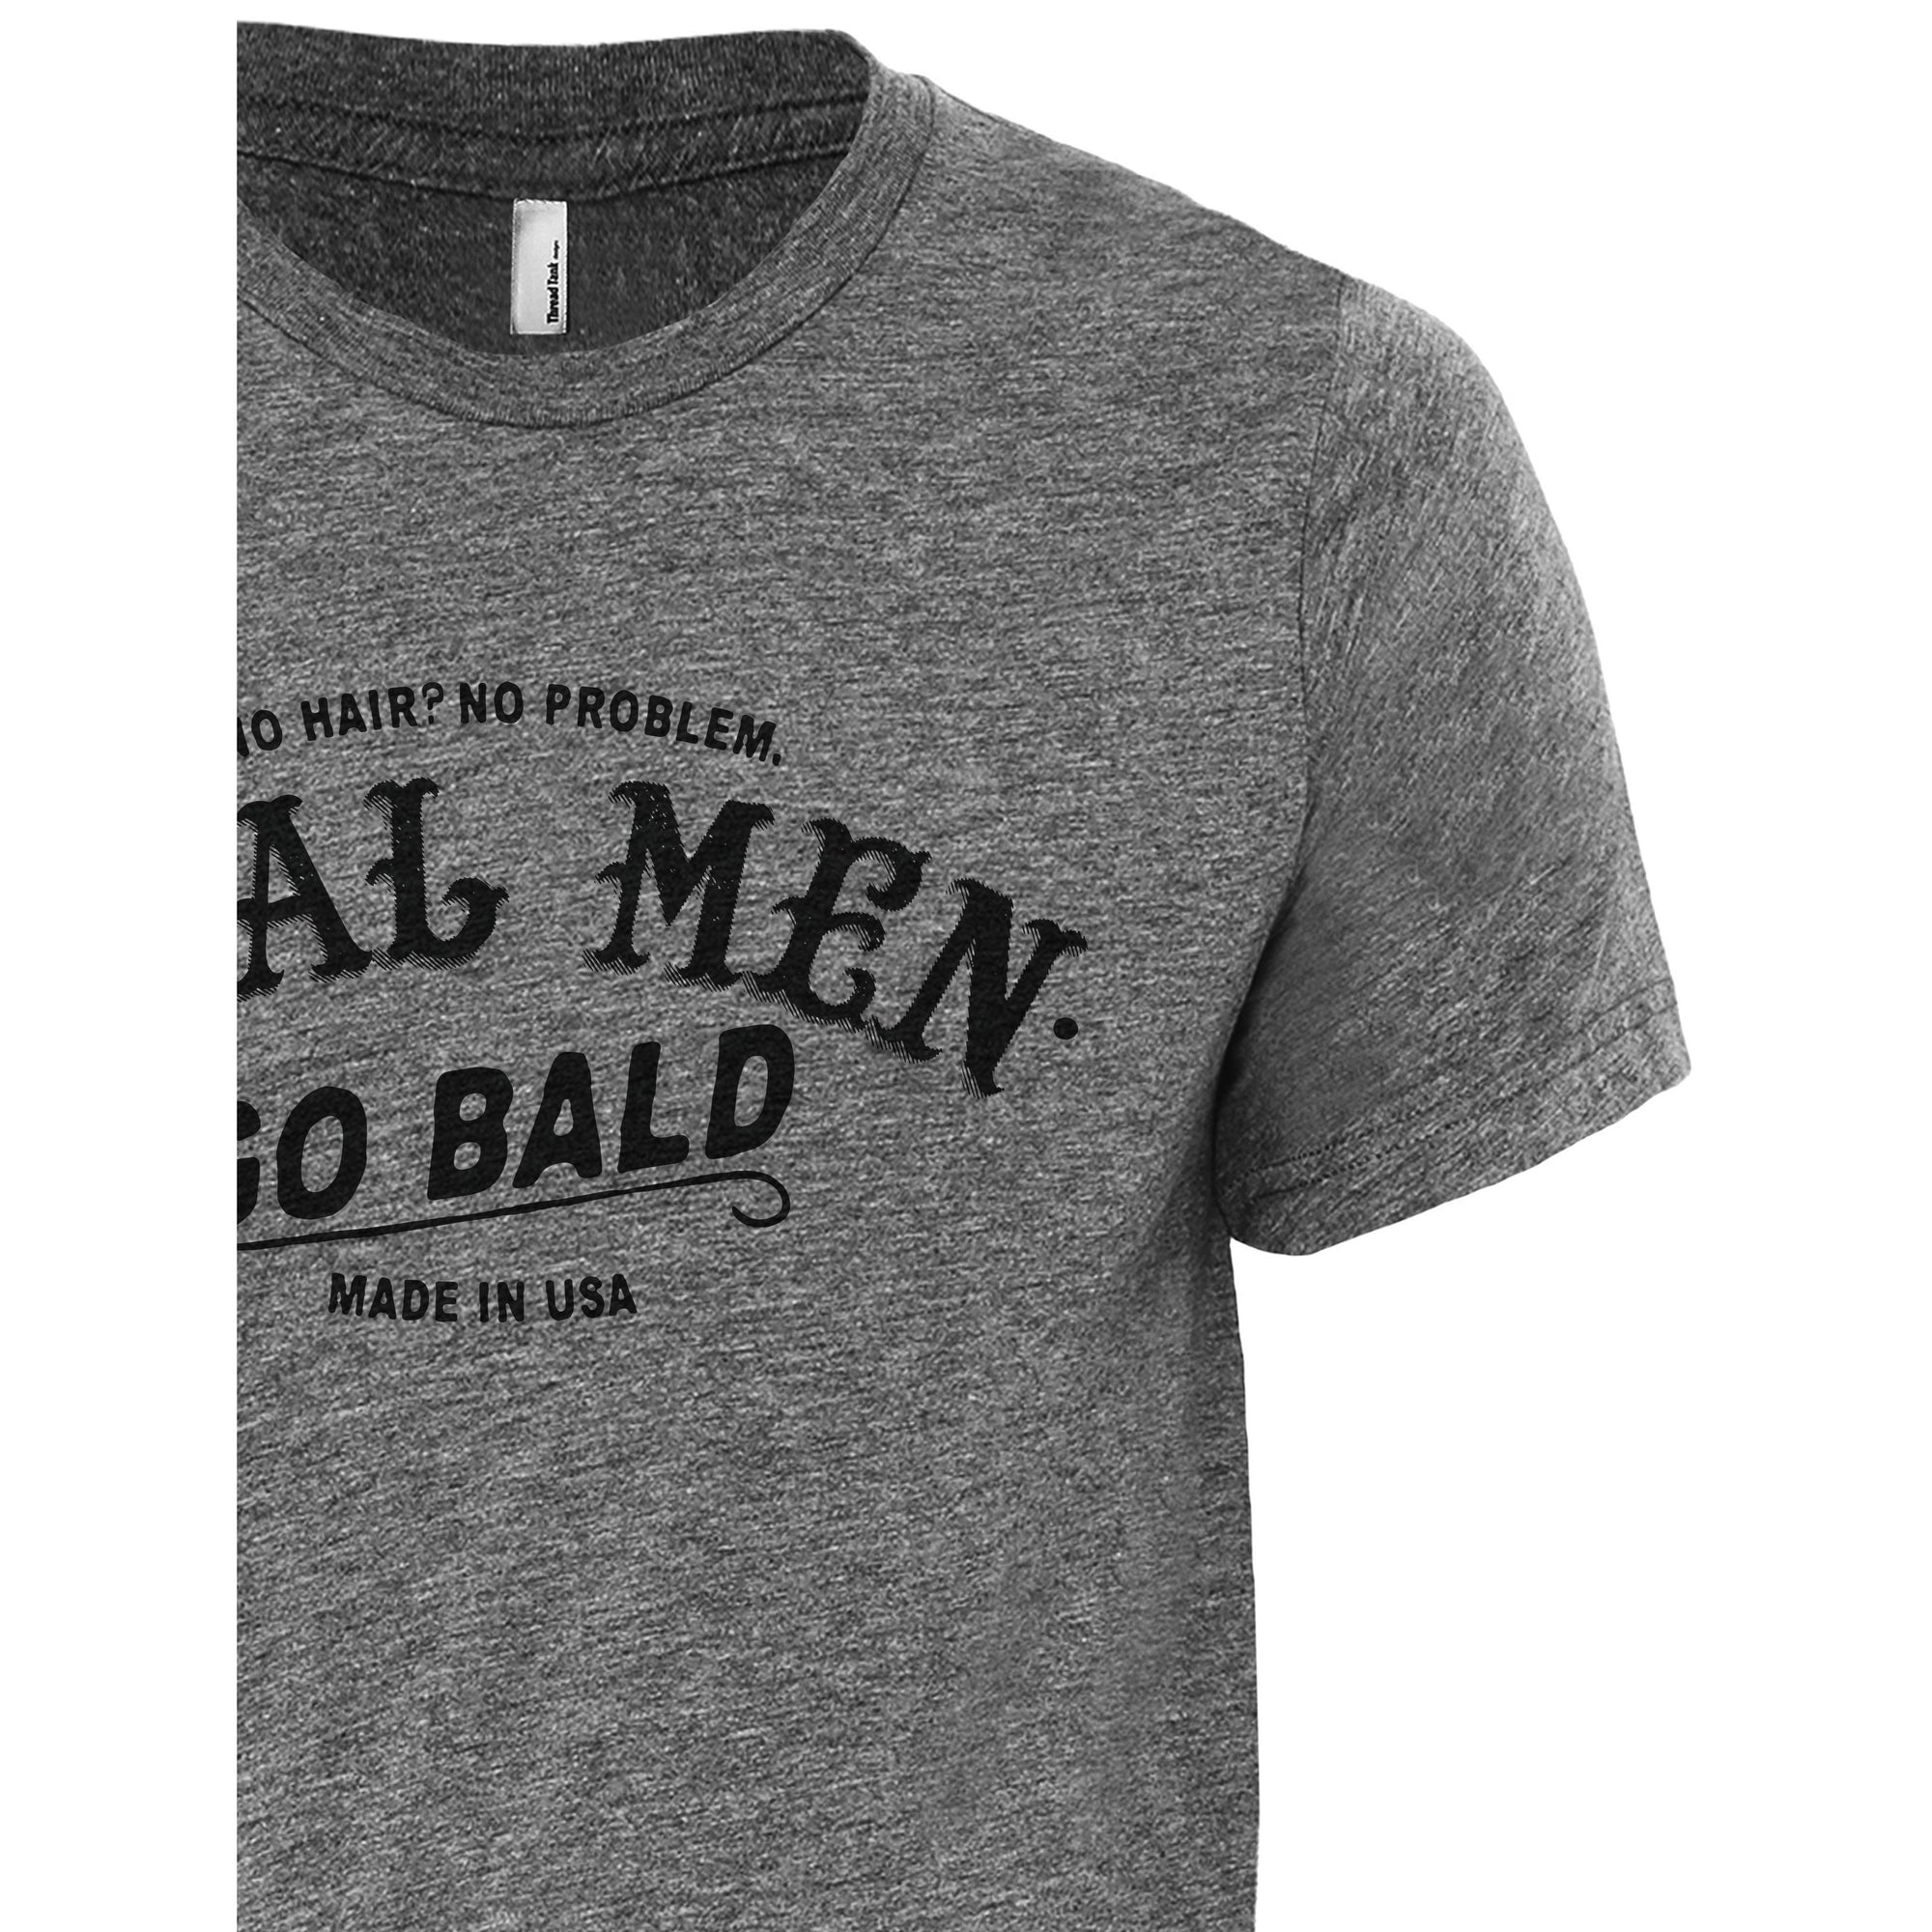 Real Men Go Bald Heather Grey Printed Graphic Men's Crew T-Shirt Tee